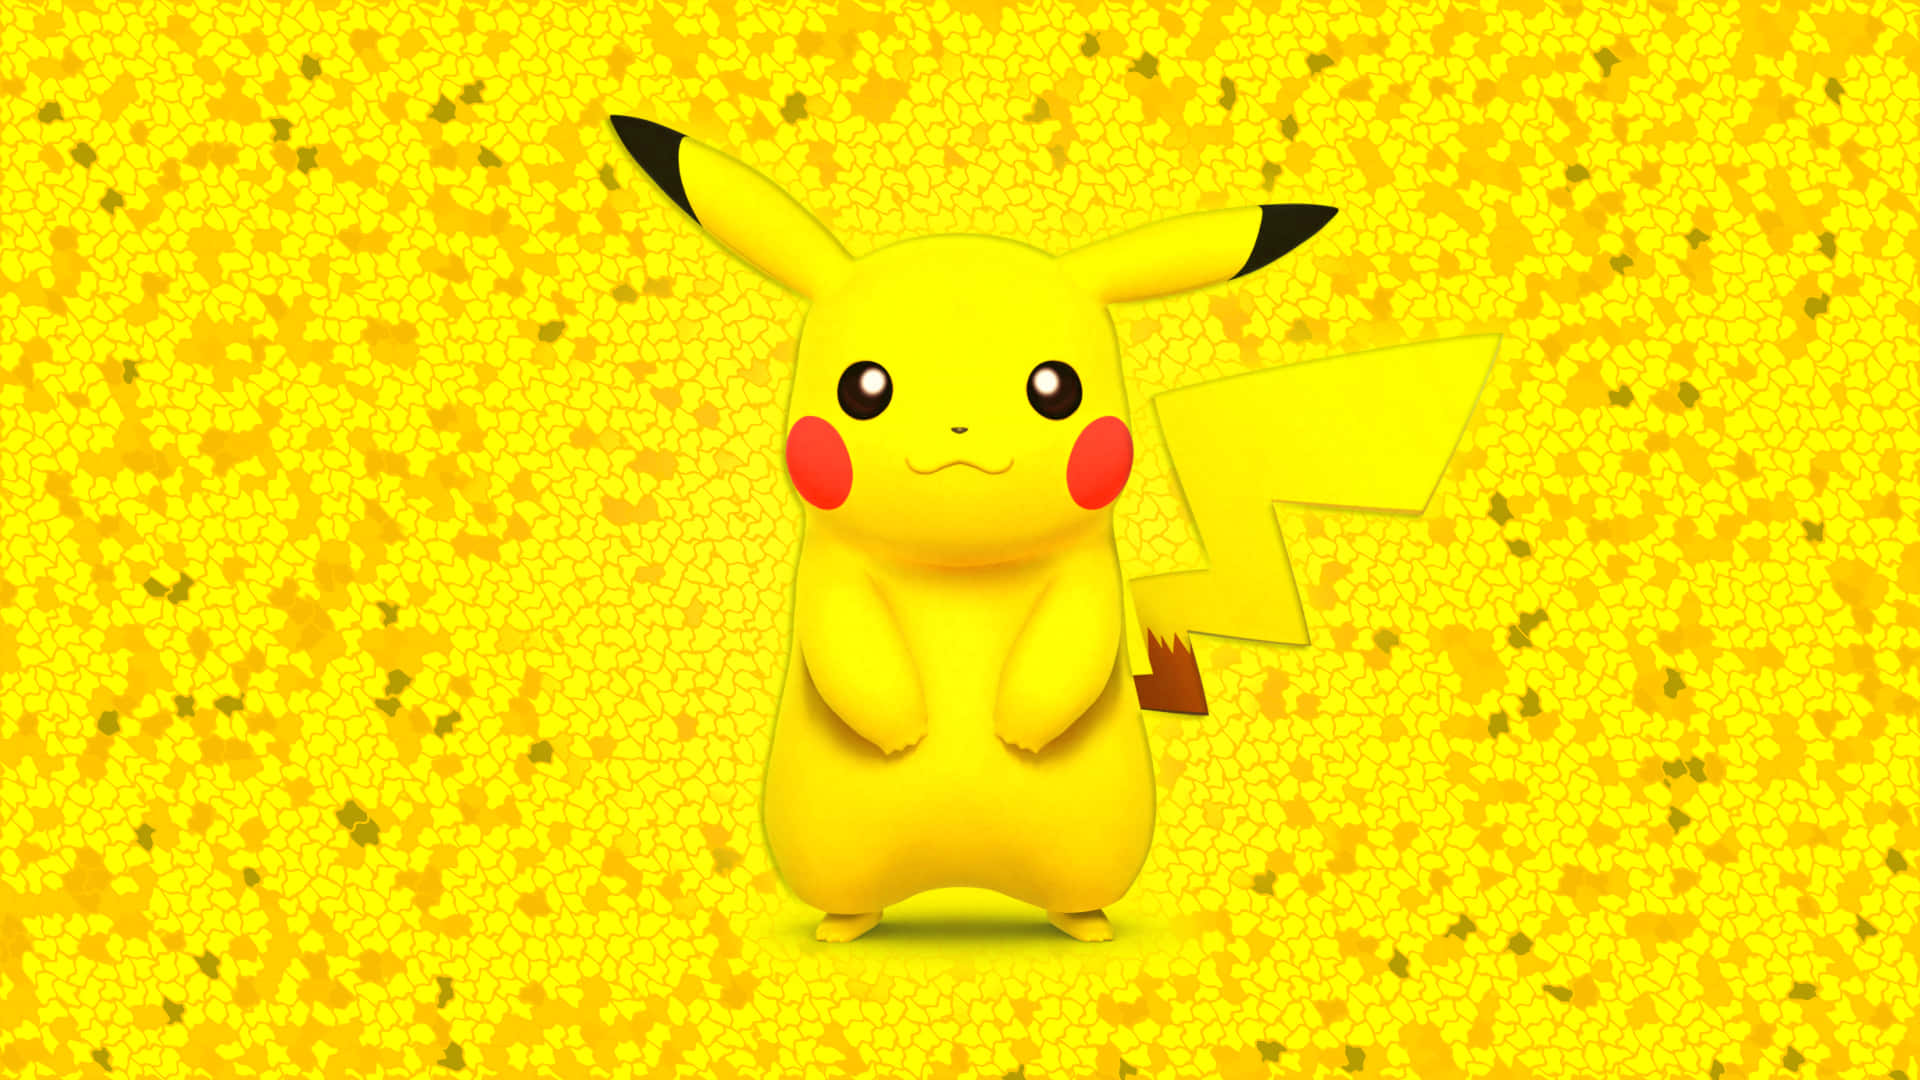 Imagemamarela Do Pikachu.